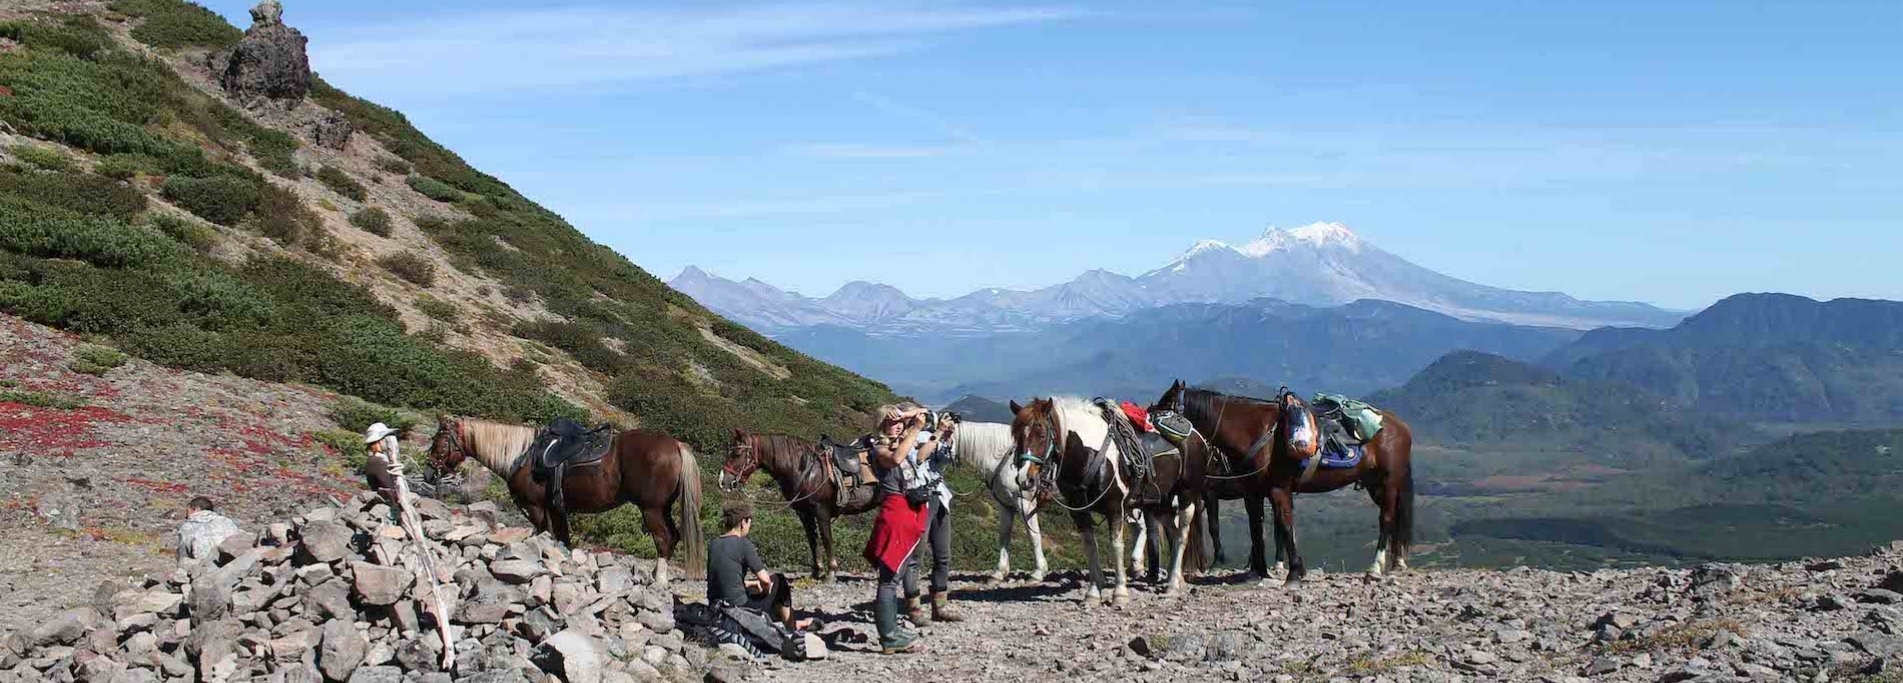 Kaleidoscope of Kamchatka - Horse riding trip in Kamchatka